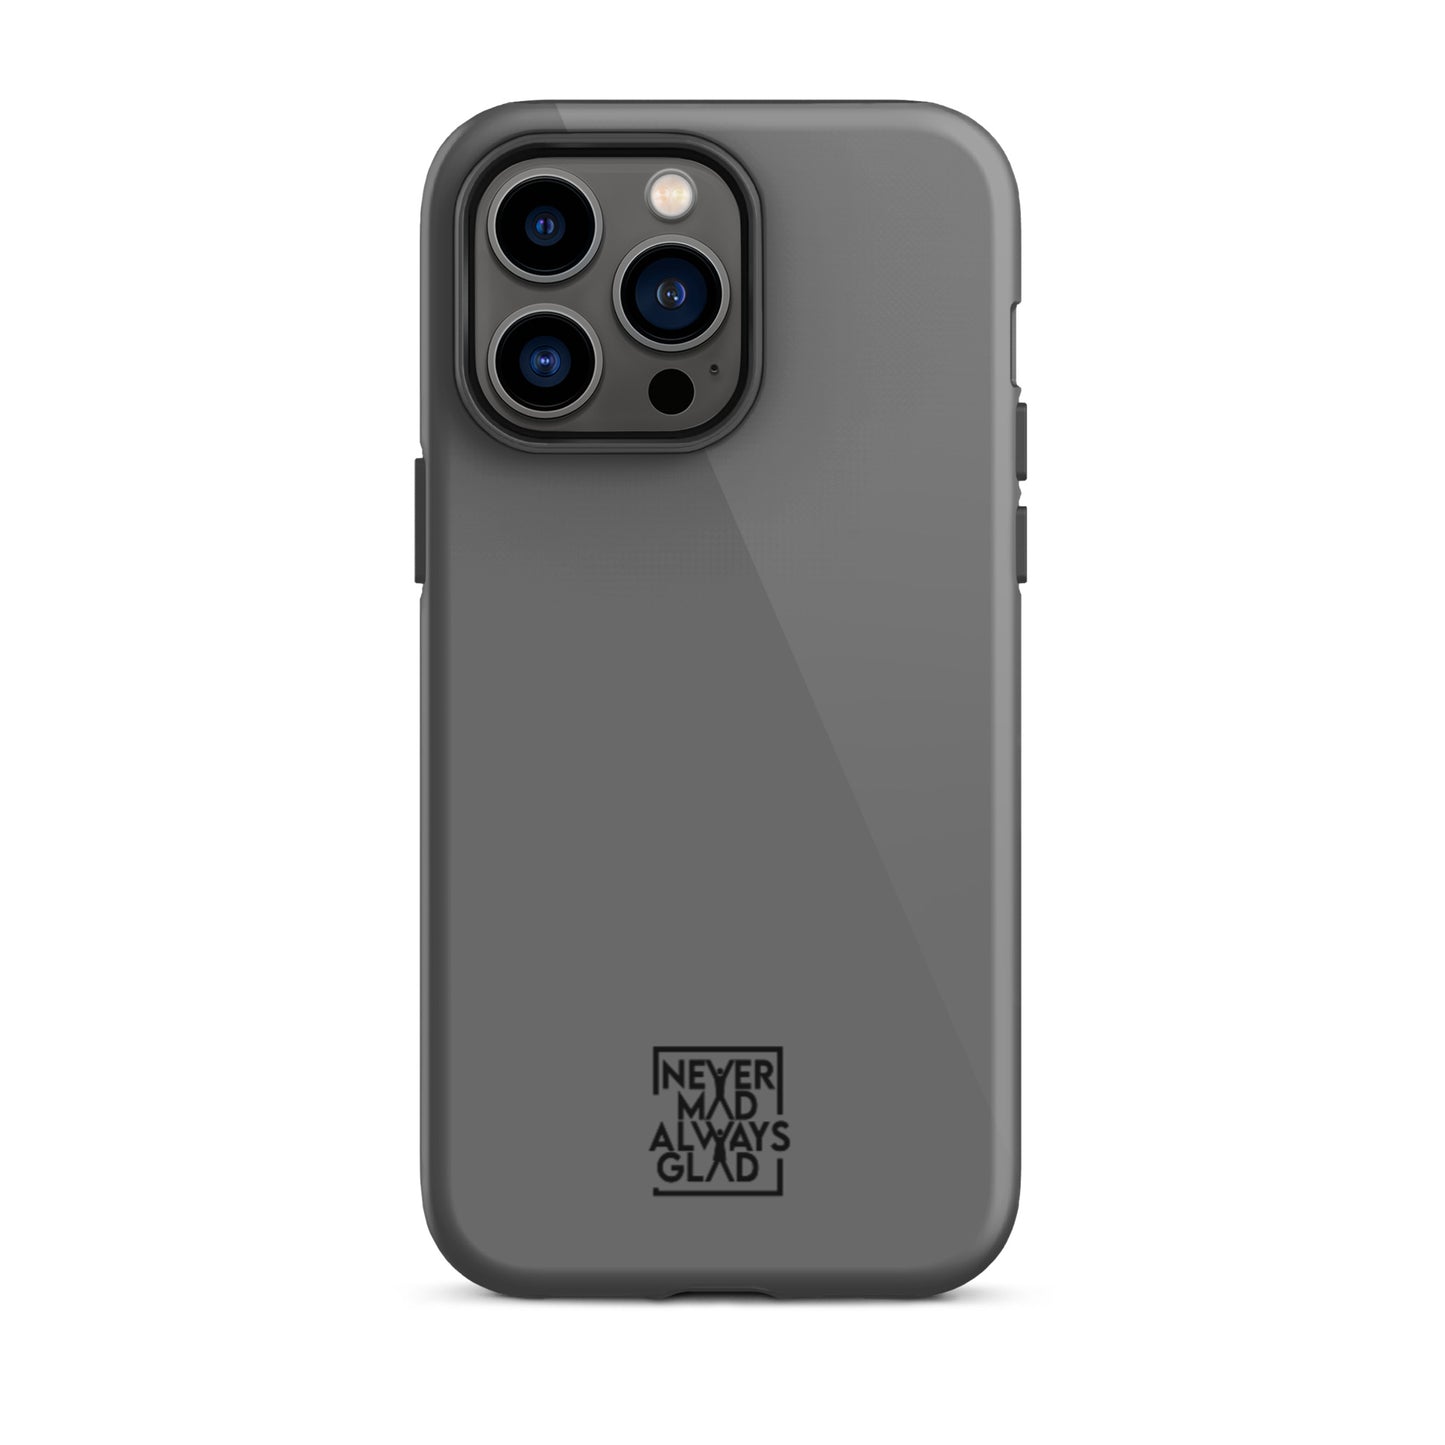 Grey Tough iPhone case